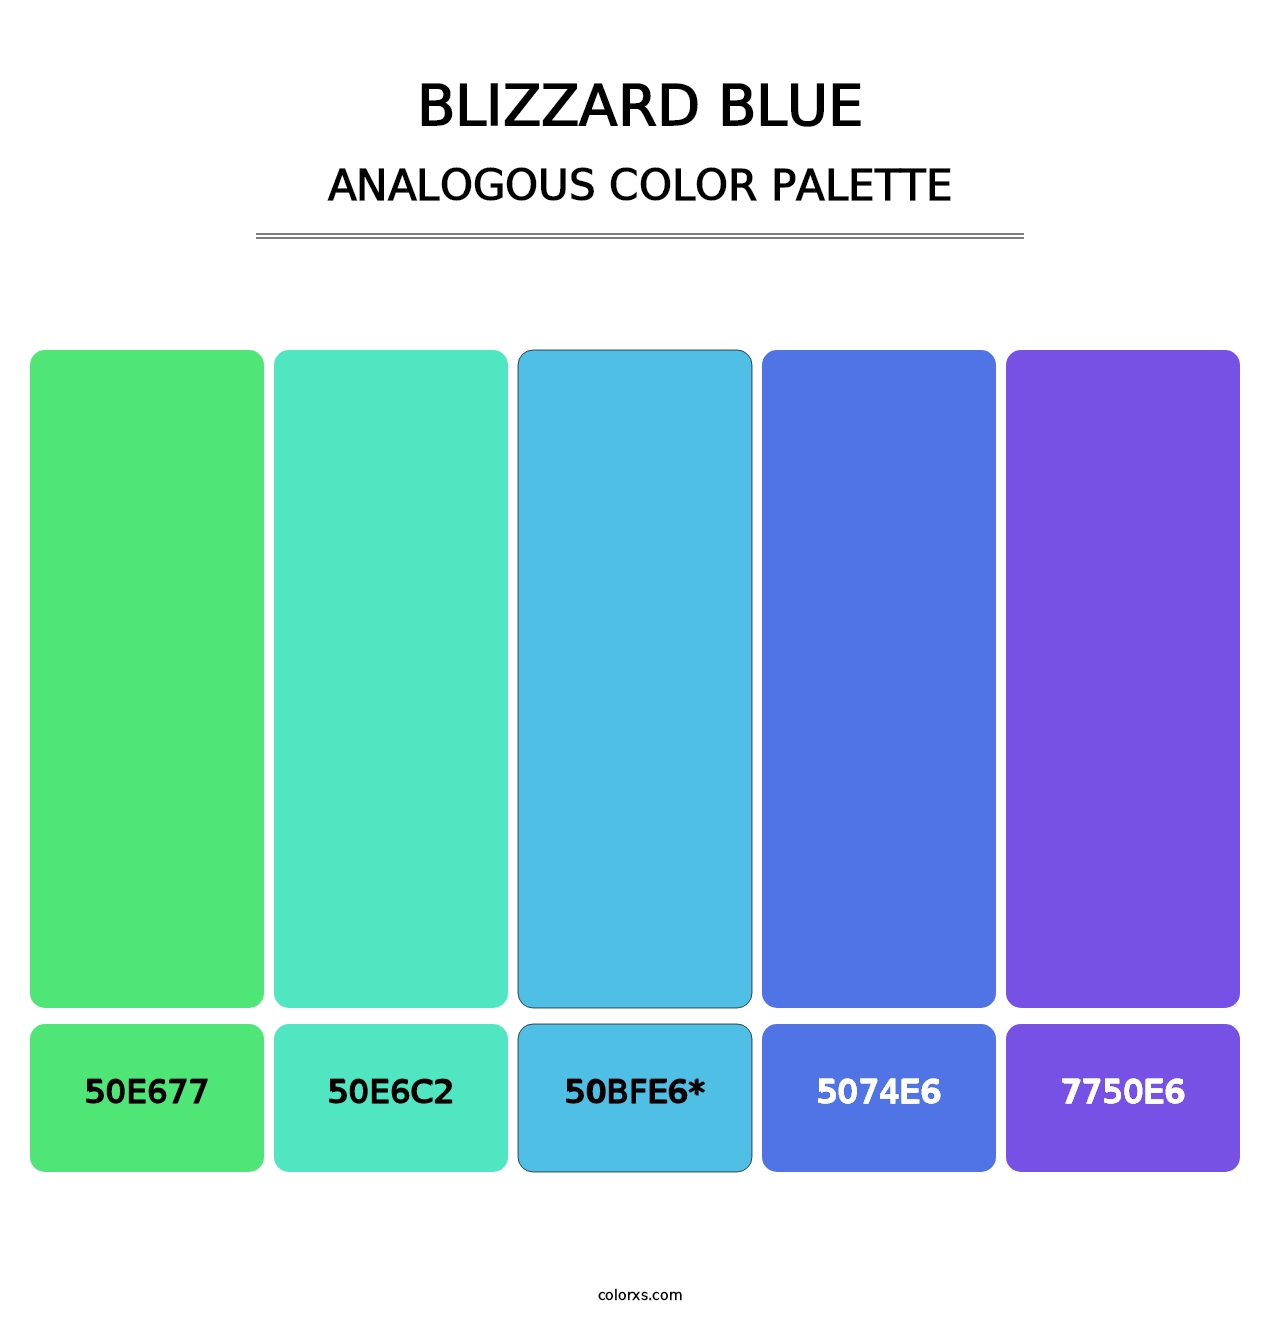 Blizzard Blue - Analogous Color Palette